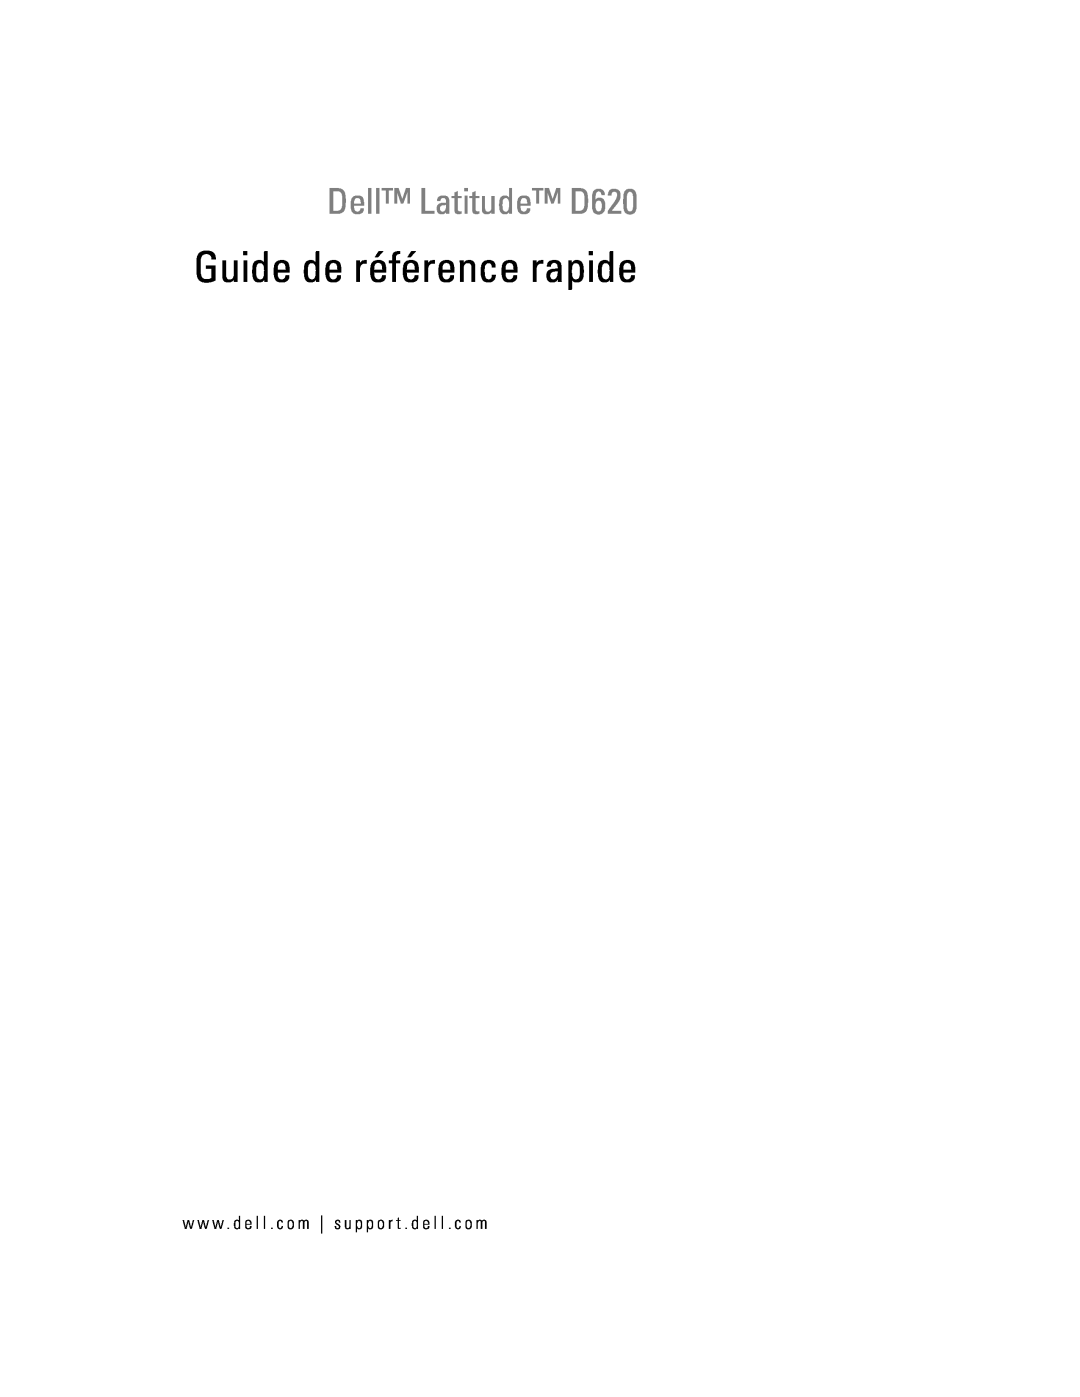 Dell manual Guide de référence rapide, Dell Latitude D620 